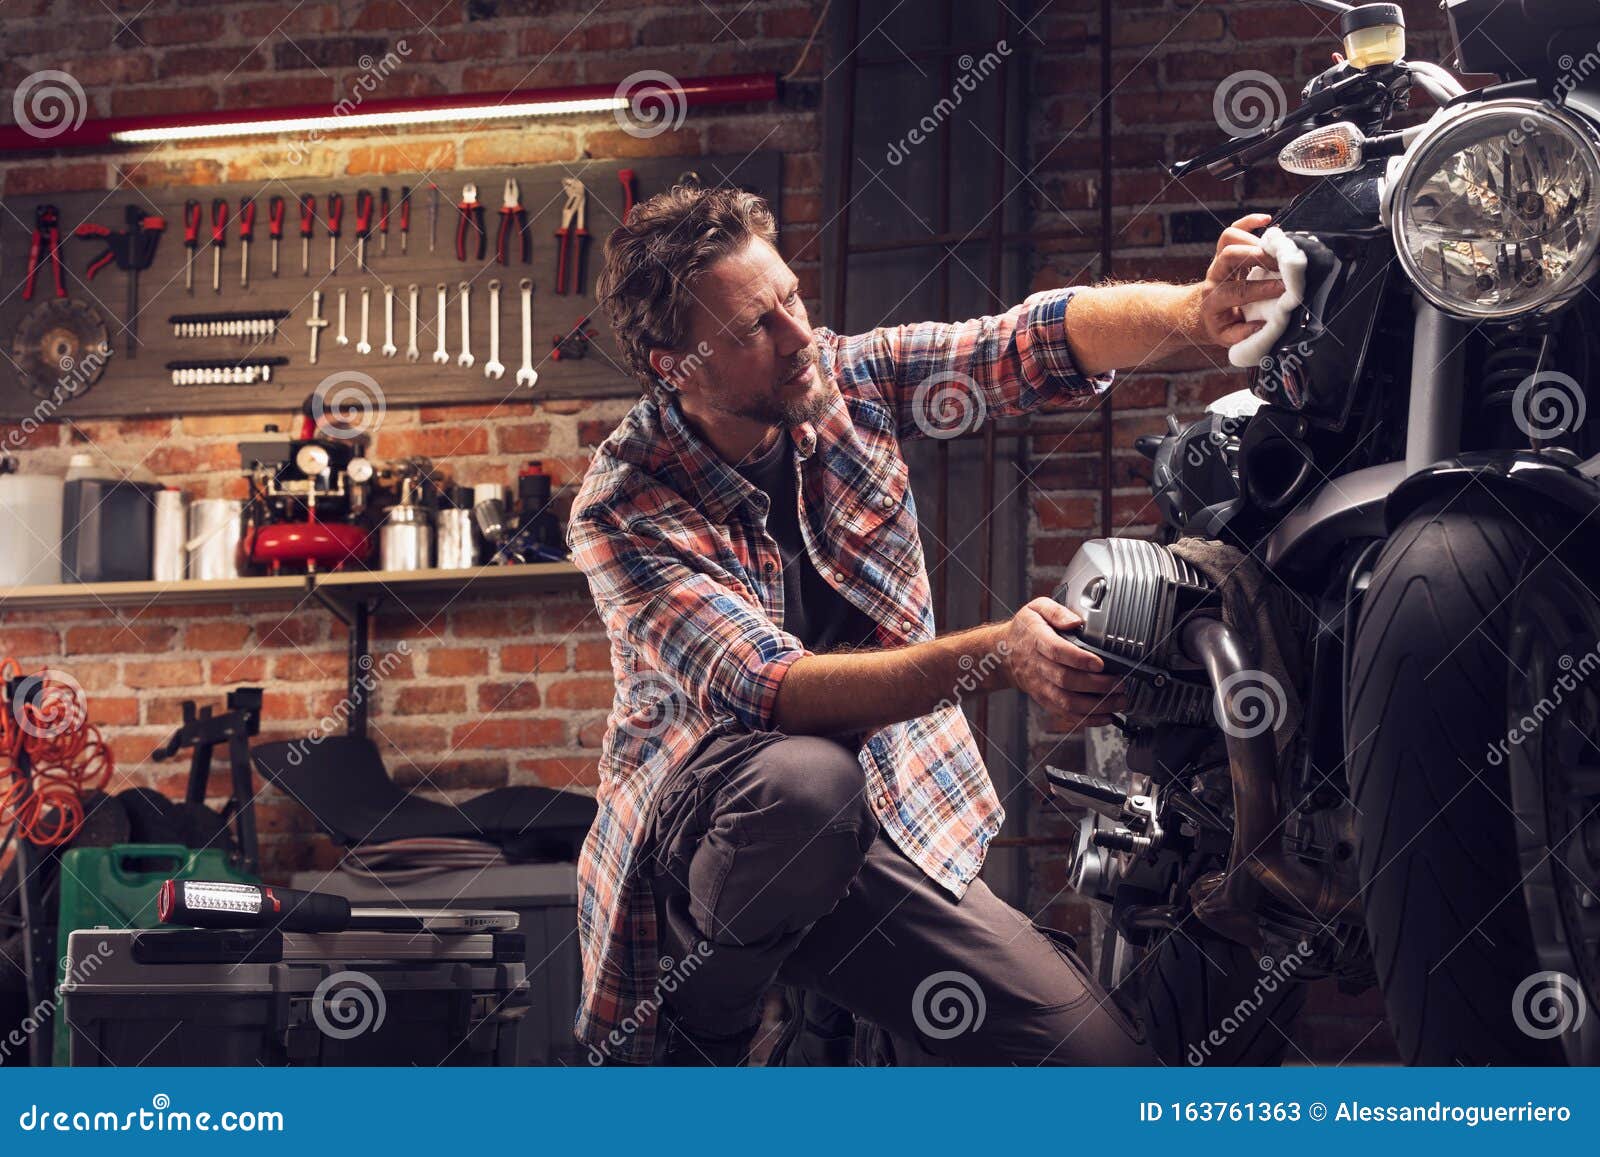 man polish motorcycle in garage